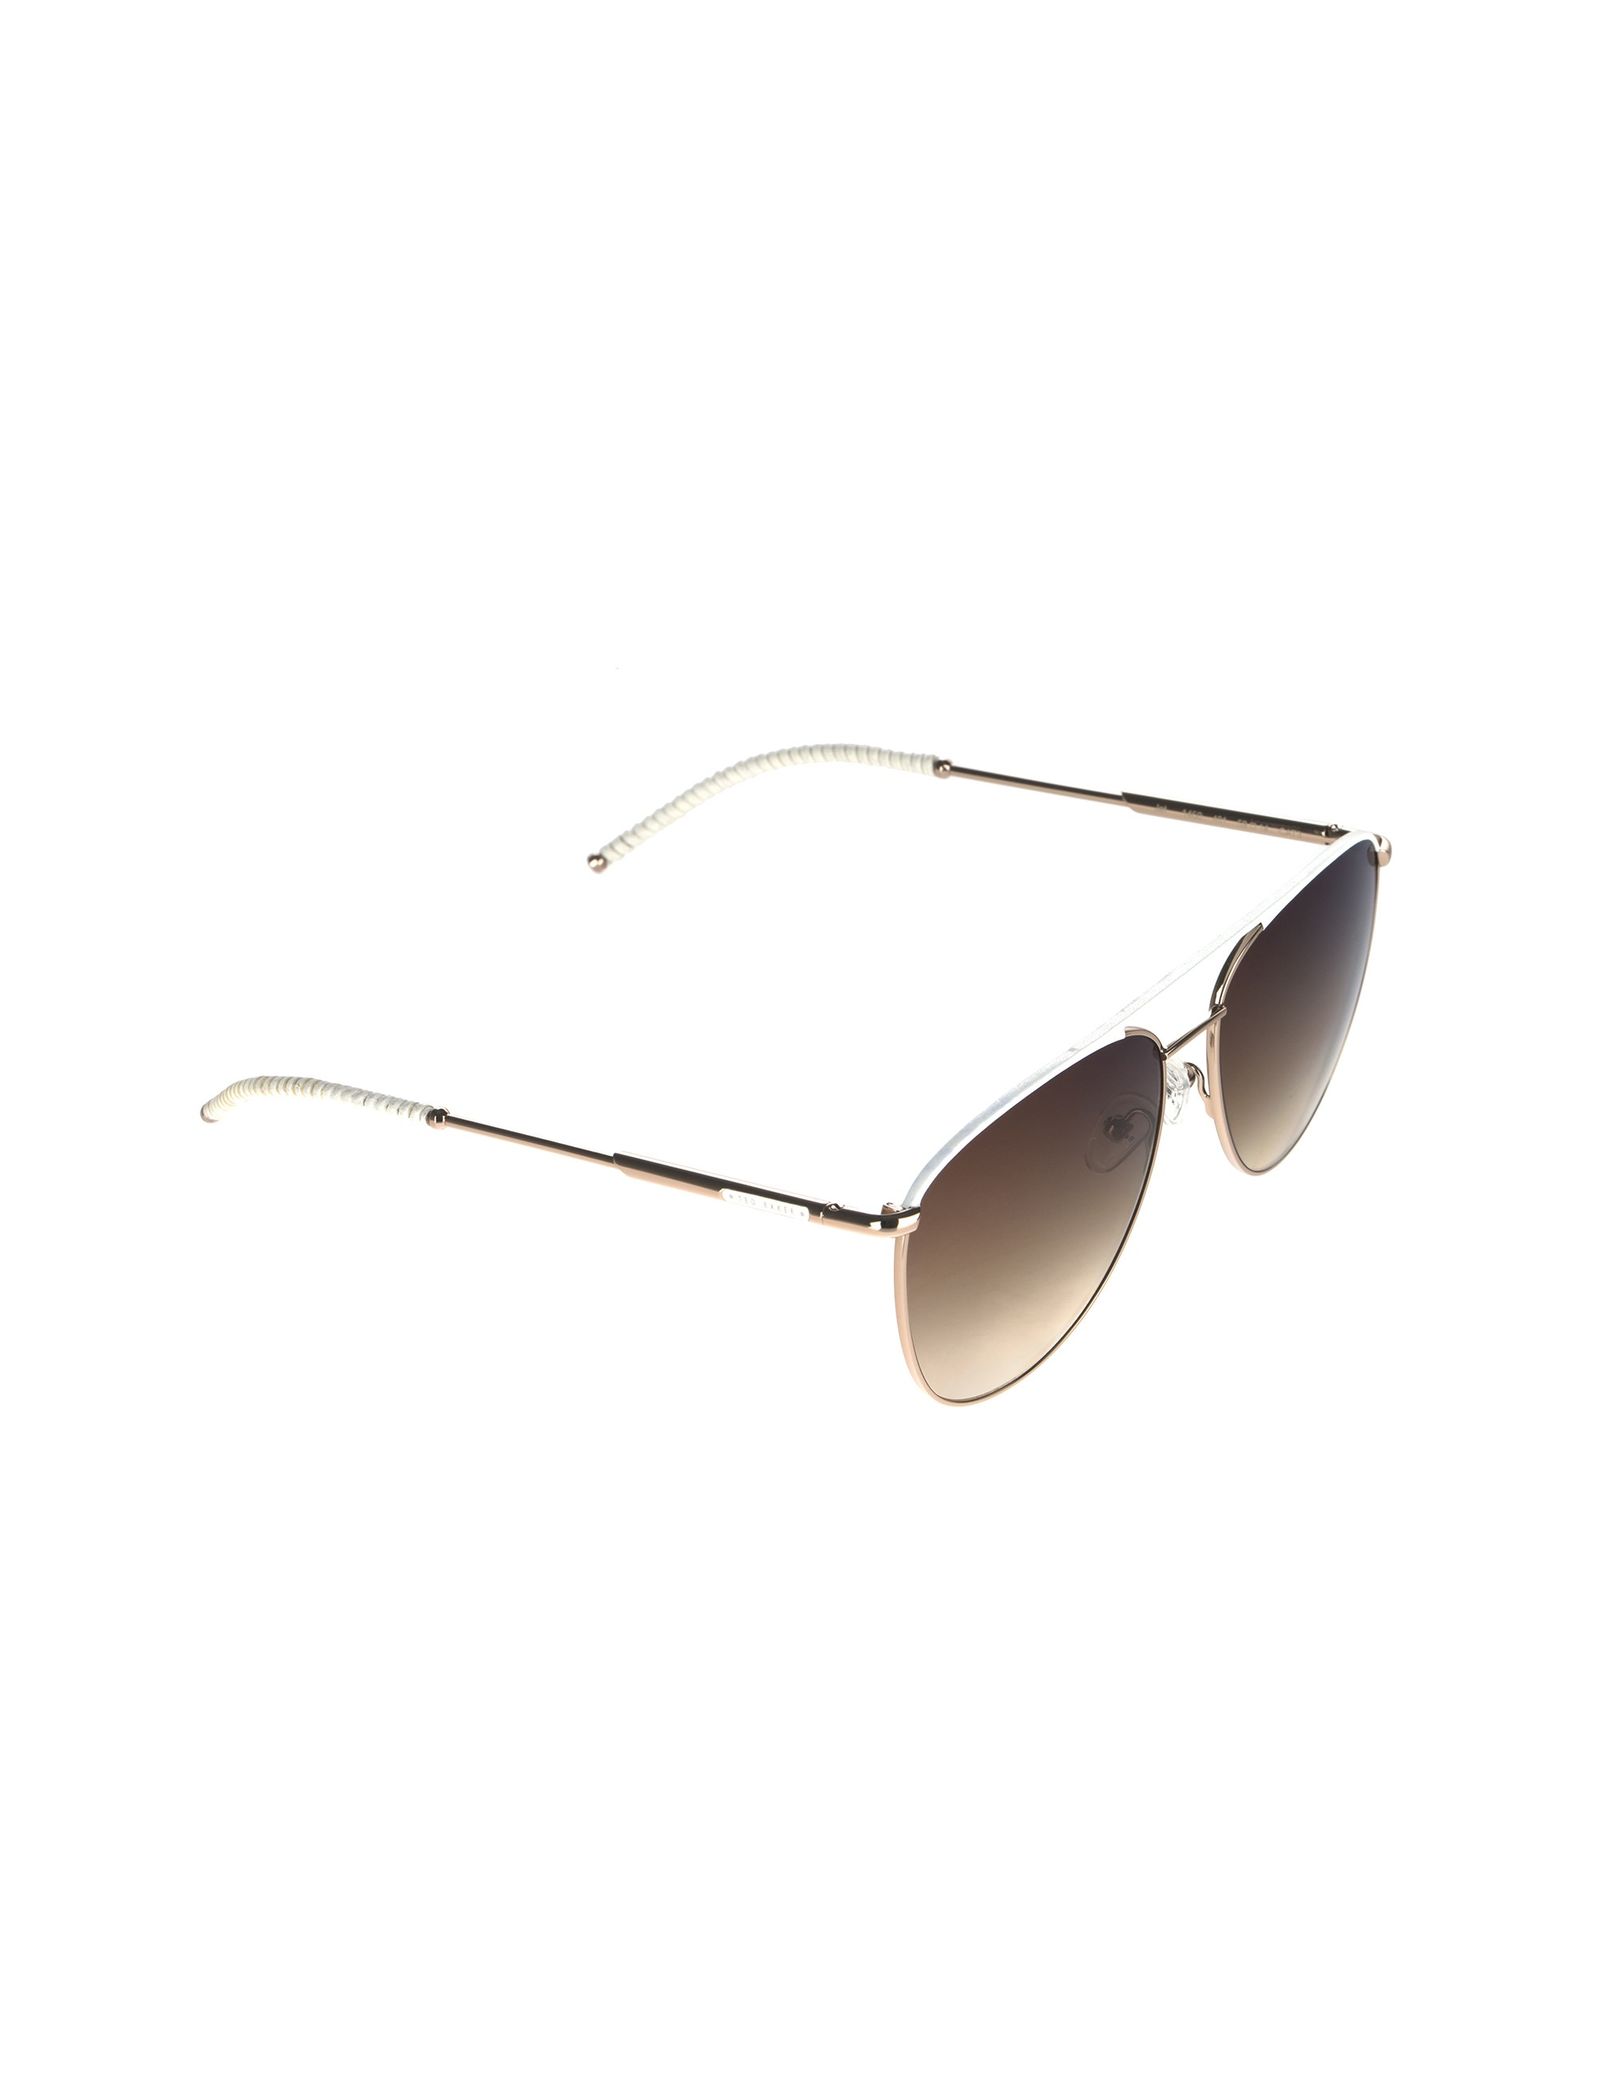 عینک آفتابی خلبانی زنانه - تد بیکر - طلايي - 3